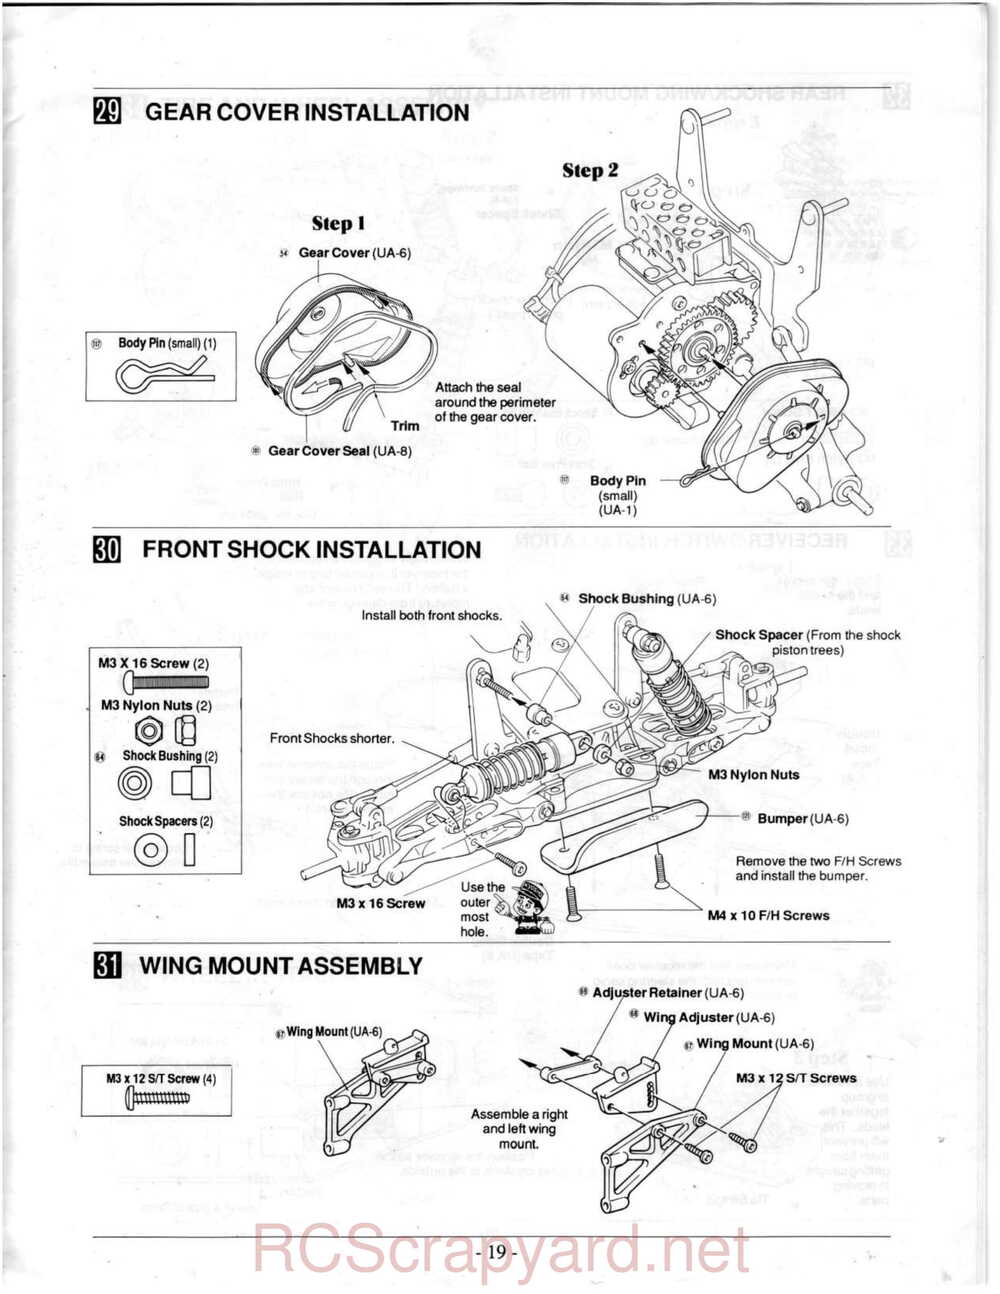 Kyosho - 3118 - Ultima-II - Manual - Page 19